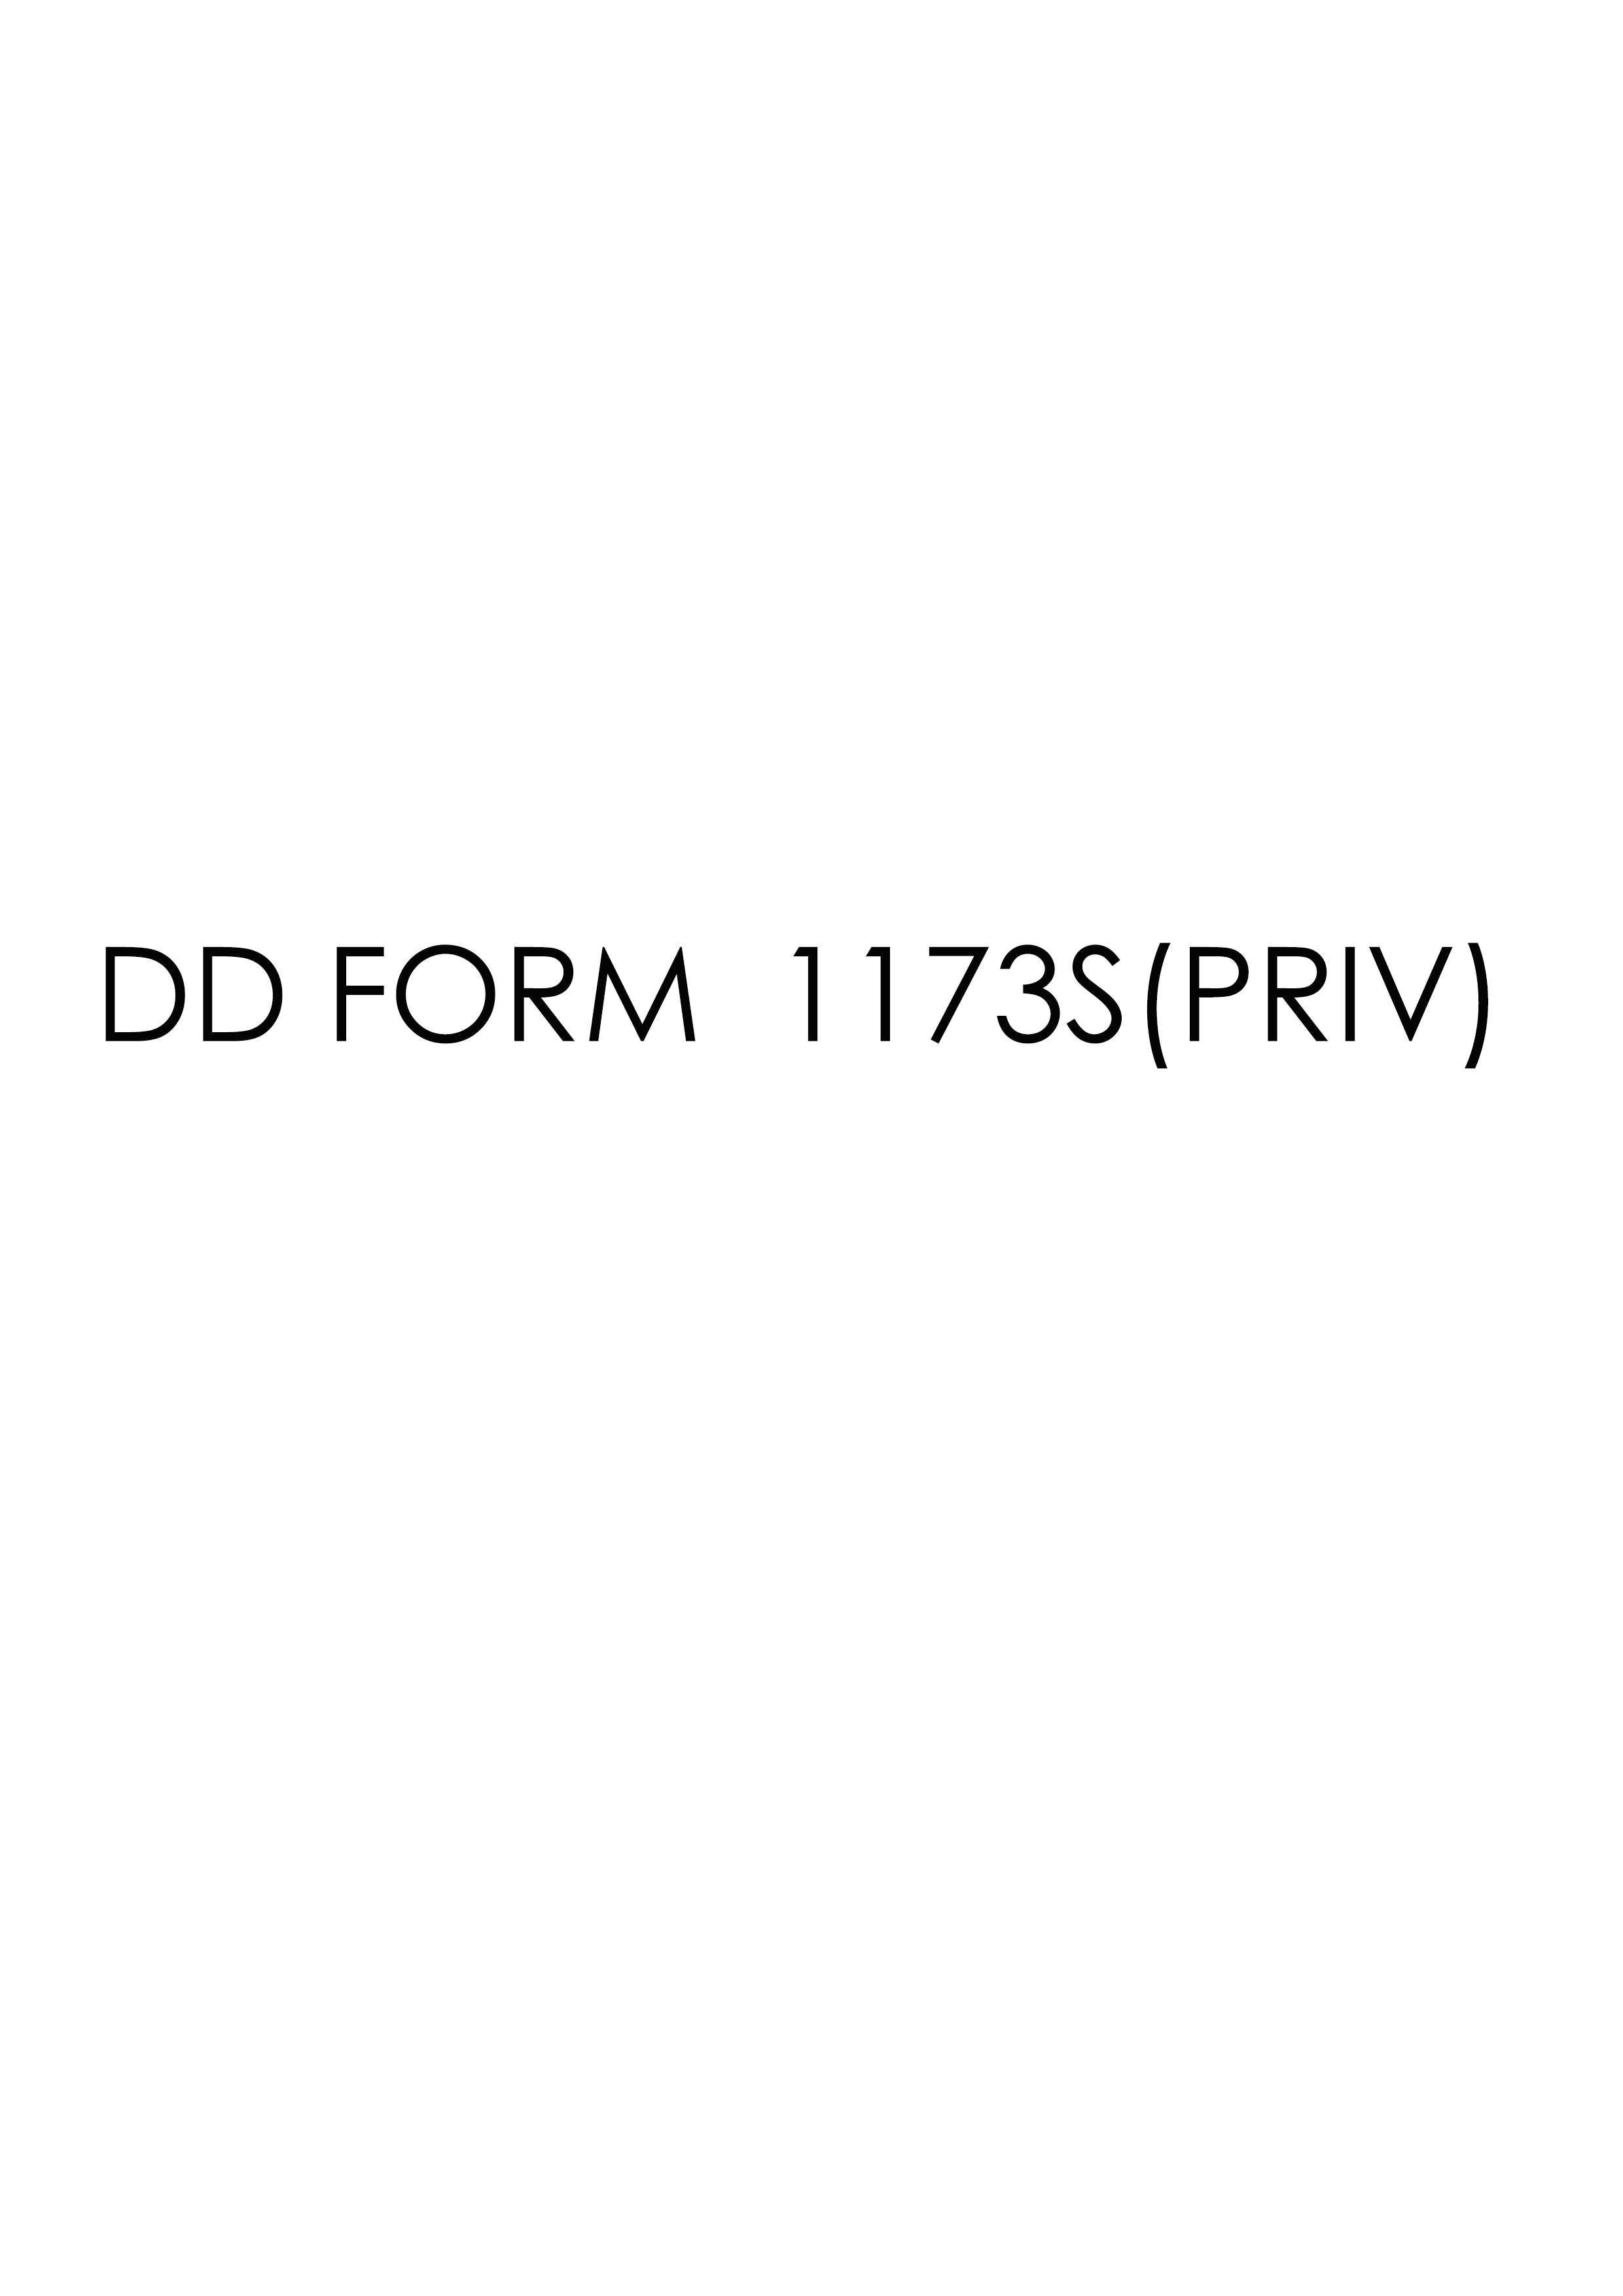 Download dd Form 1173S(PRIV)